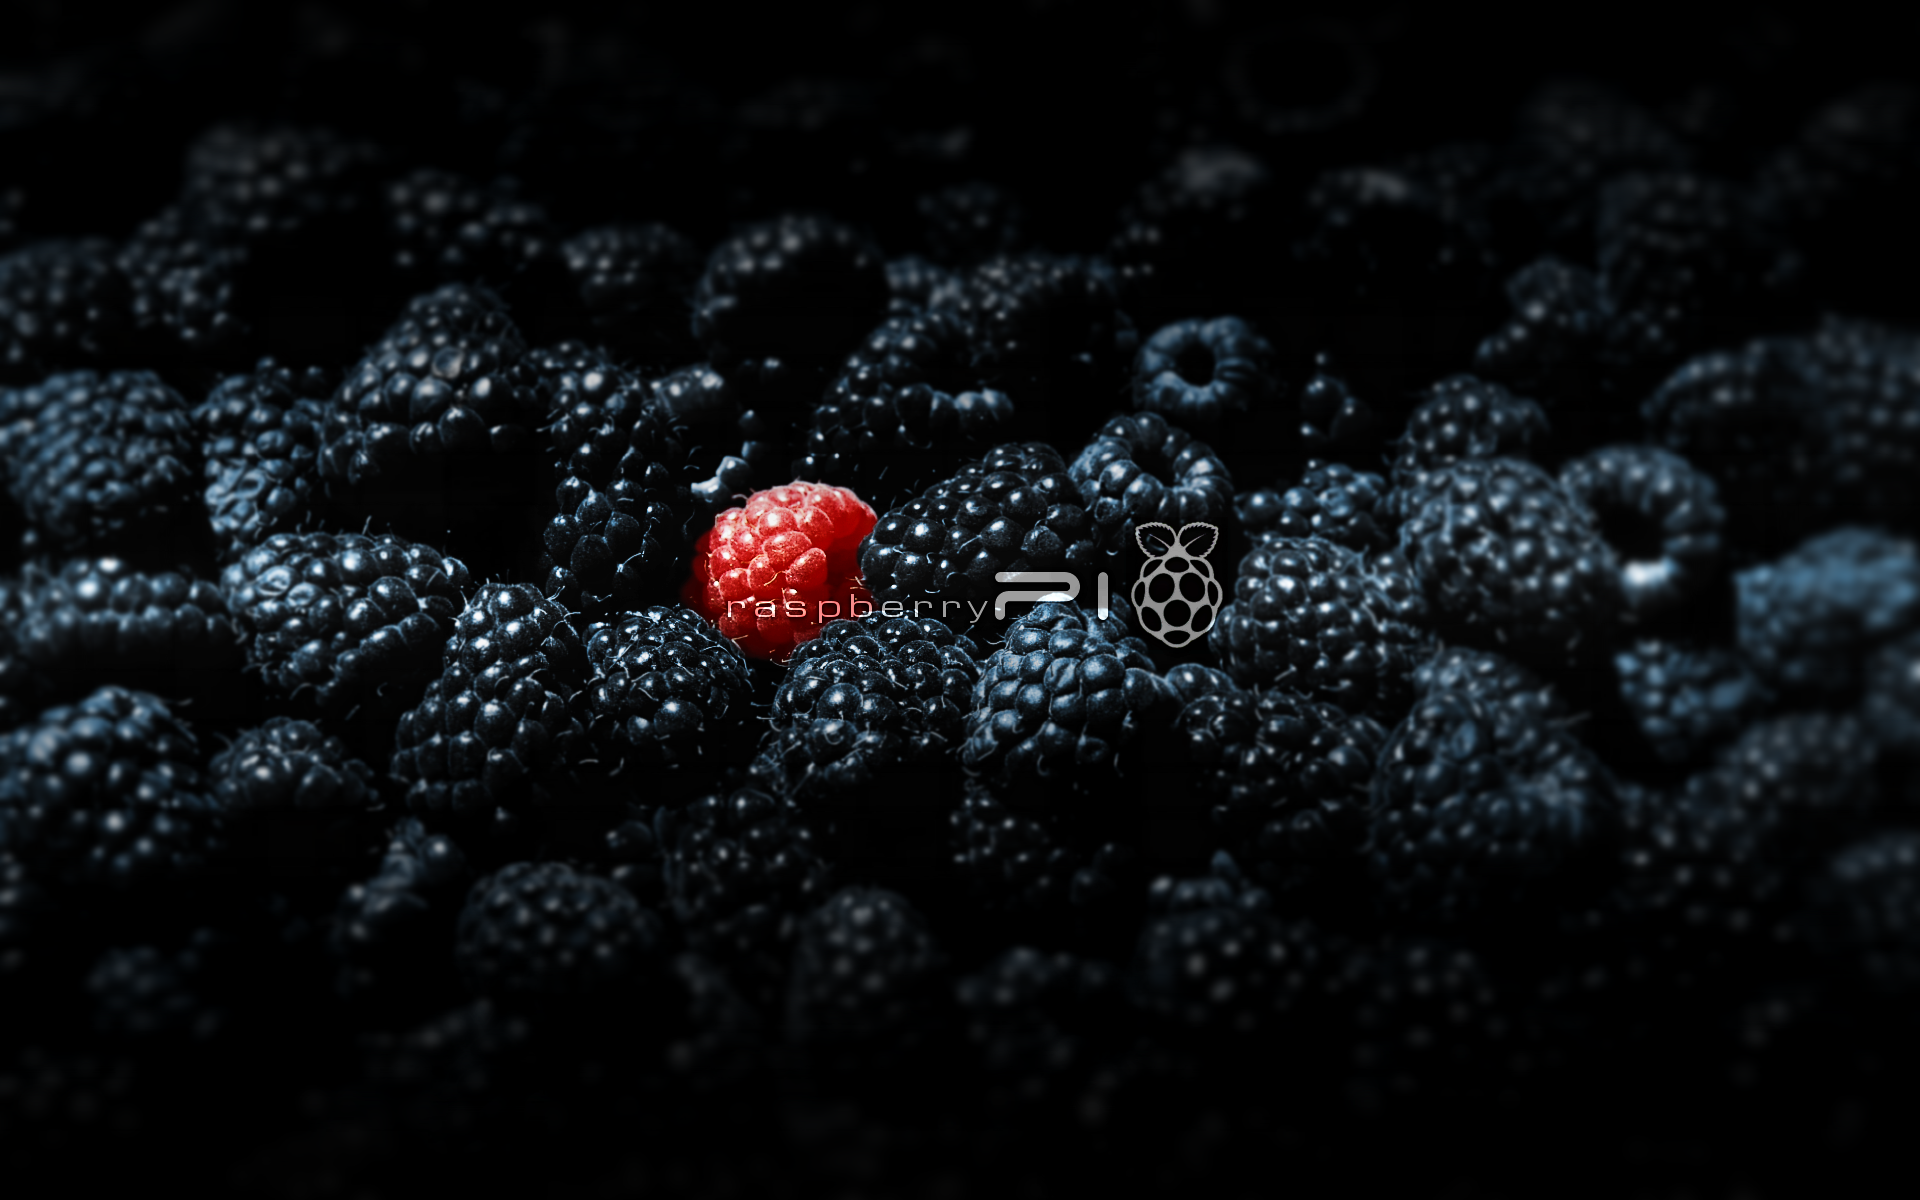 raspberry pi wallpaper,blackberry,berry,black,red,frutti di bosco